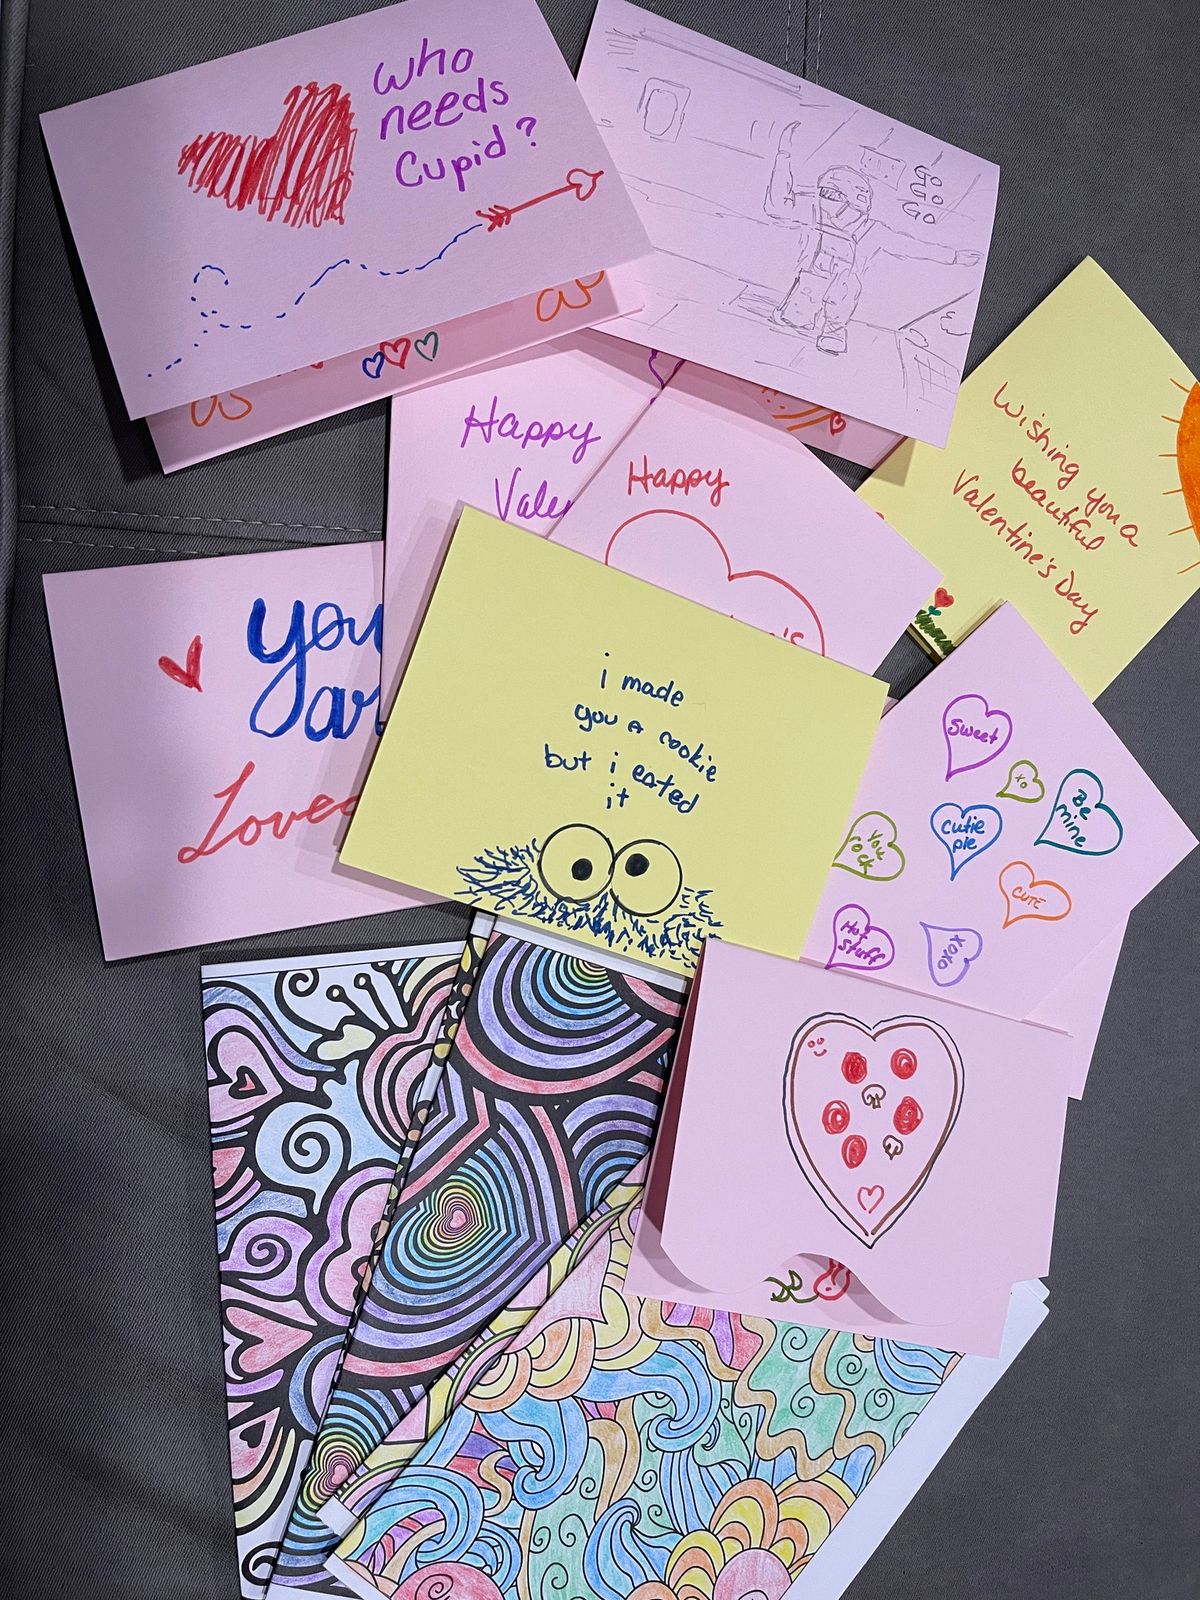 Volunteer Event: Making Cards for Hospitalized Kids